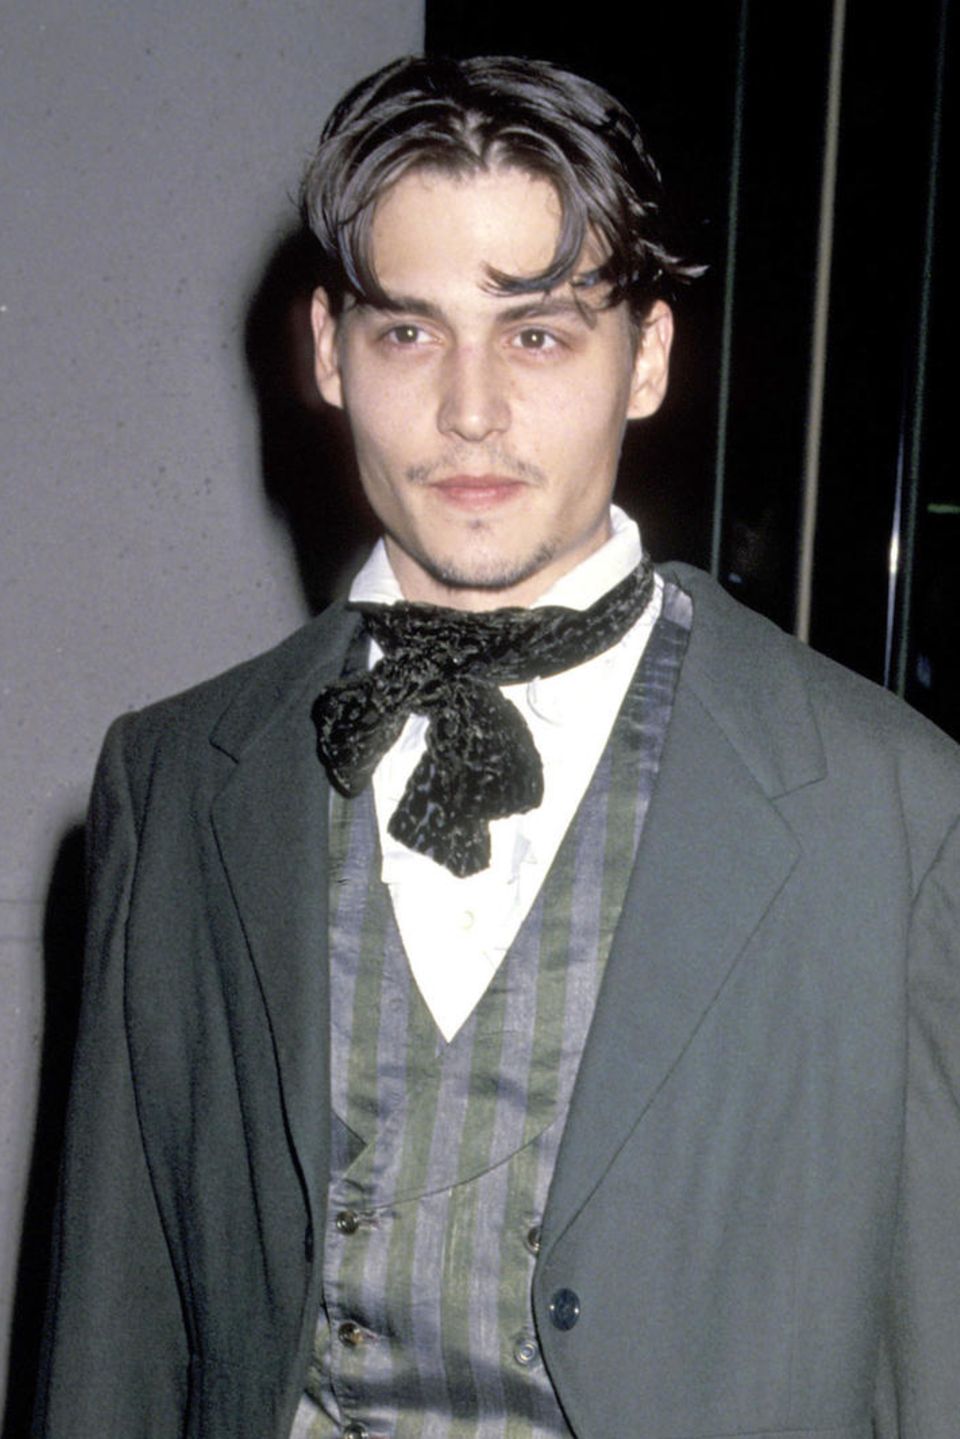 1991  Bekannt wird der US-Amerikaner durch seine Rolle in der Fernsehserie "21 Jump Street". Zu diesen Zeiten trägt er seine dunklen Haare kurz, hier bei den 48. Golden Globe Awards mit einem Mittelscheitel.